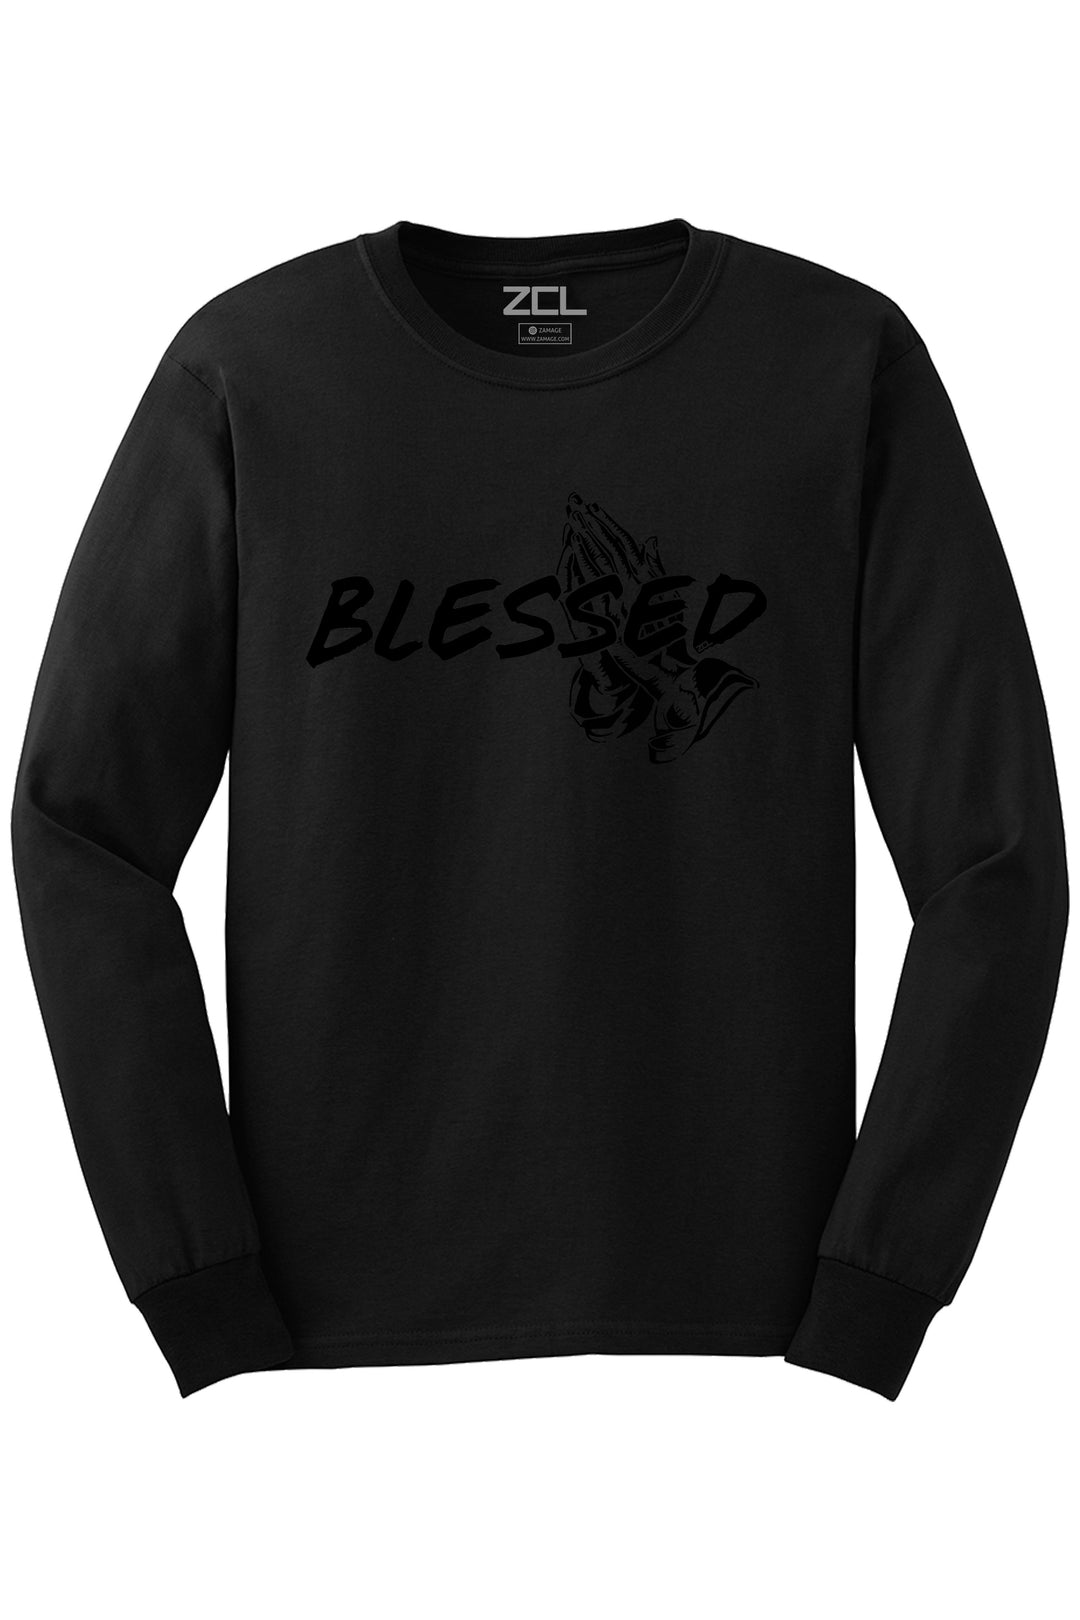 Blessed Long Sleeve Tee (Black Logo) - Zamage